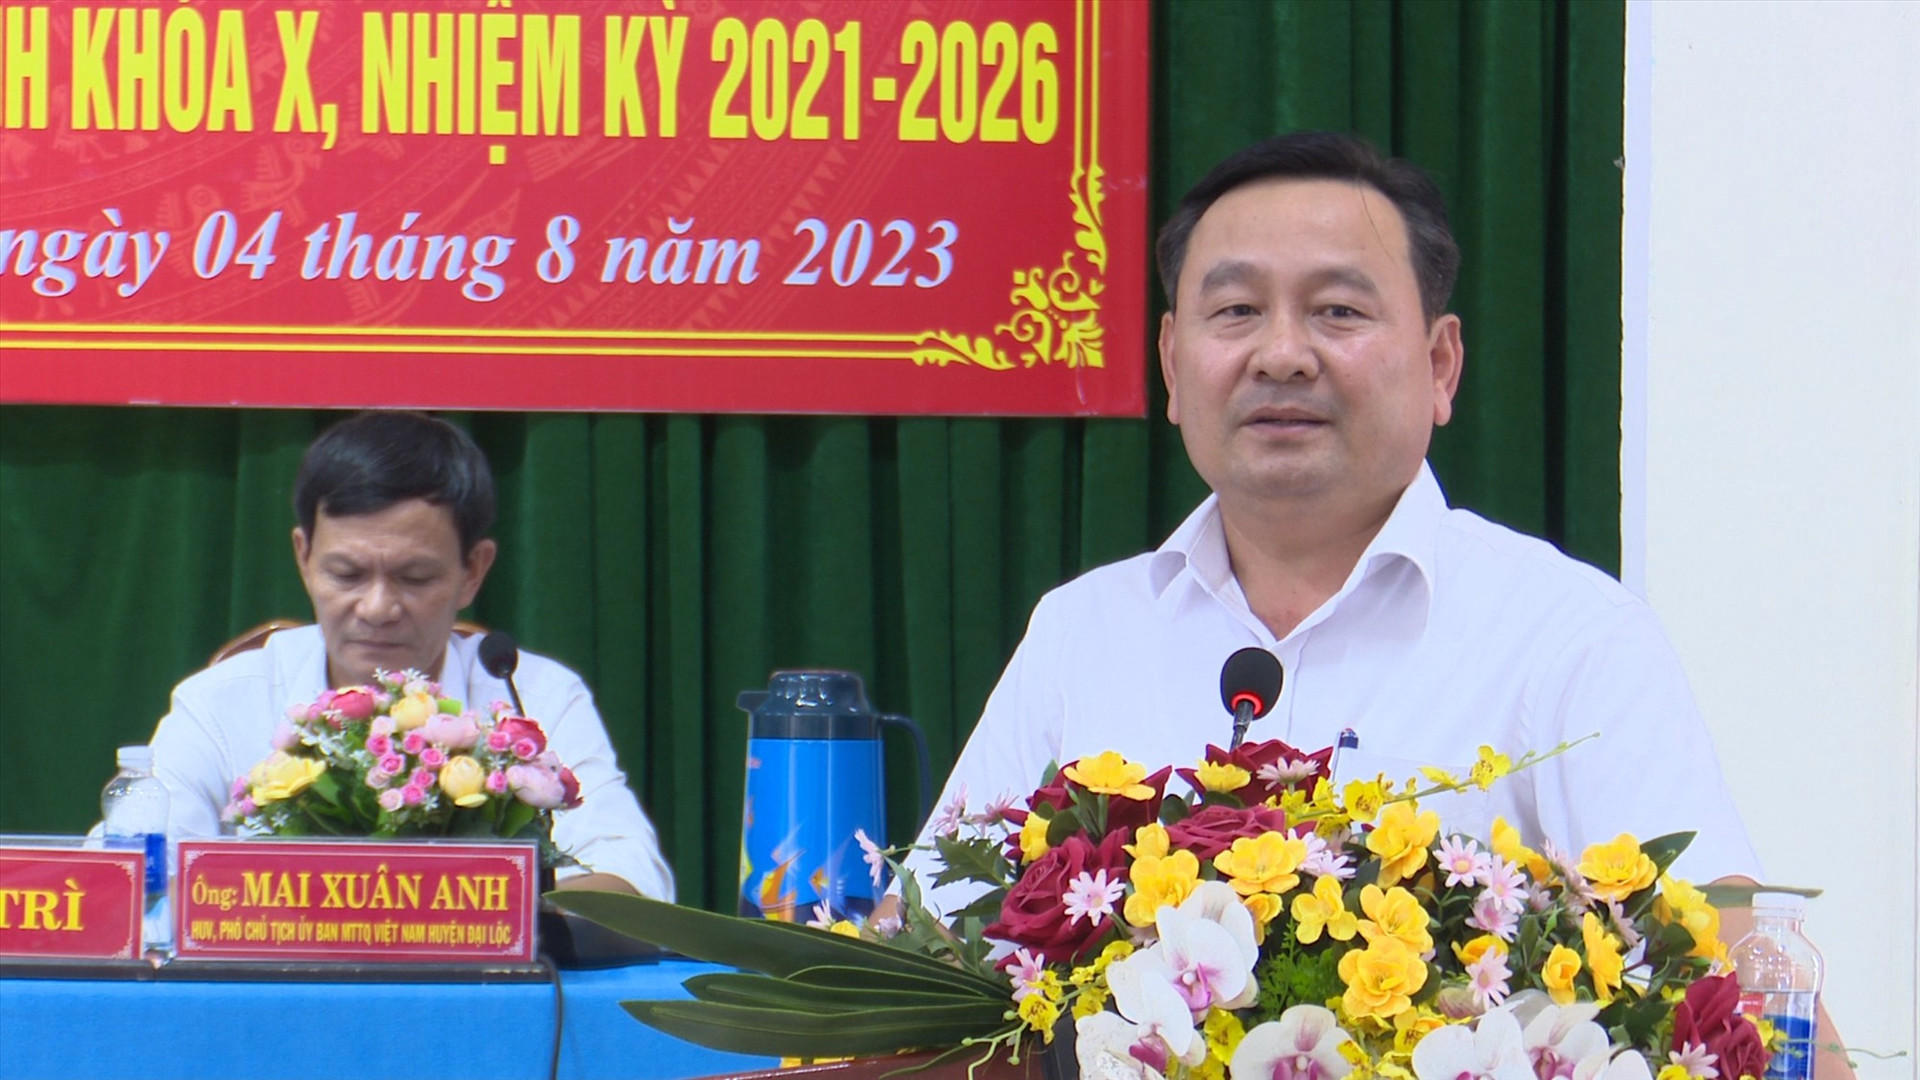 Phó Chủ tịch HĐND tỉnh Nguyễn Công Thanh phát biểu tại buổi tiếp xúc cử tri. Ảnh: N.D